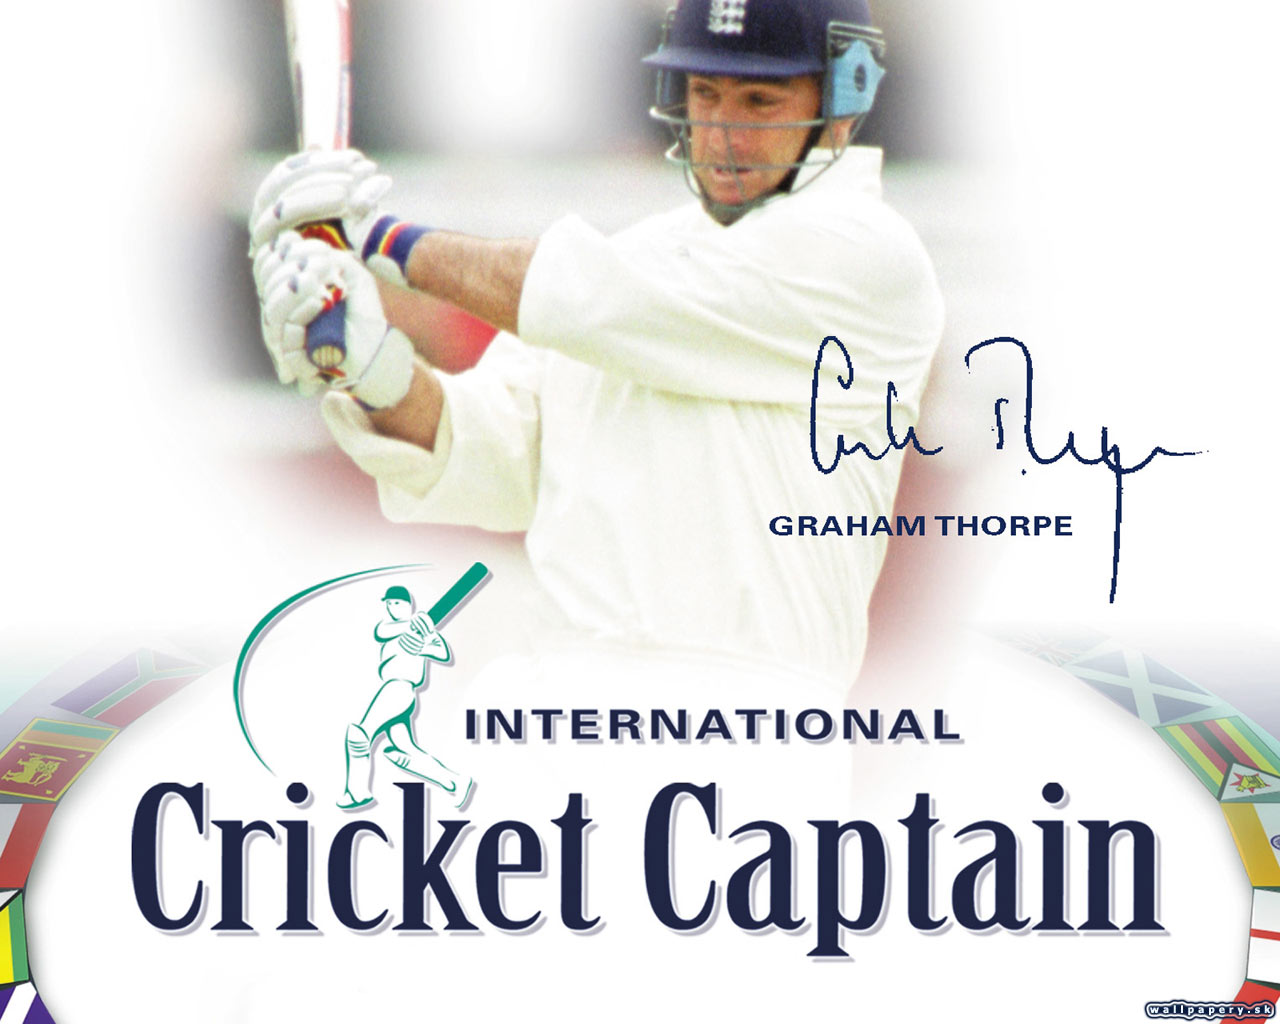 International Cricket Captain 2002 - wallpaper 4